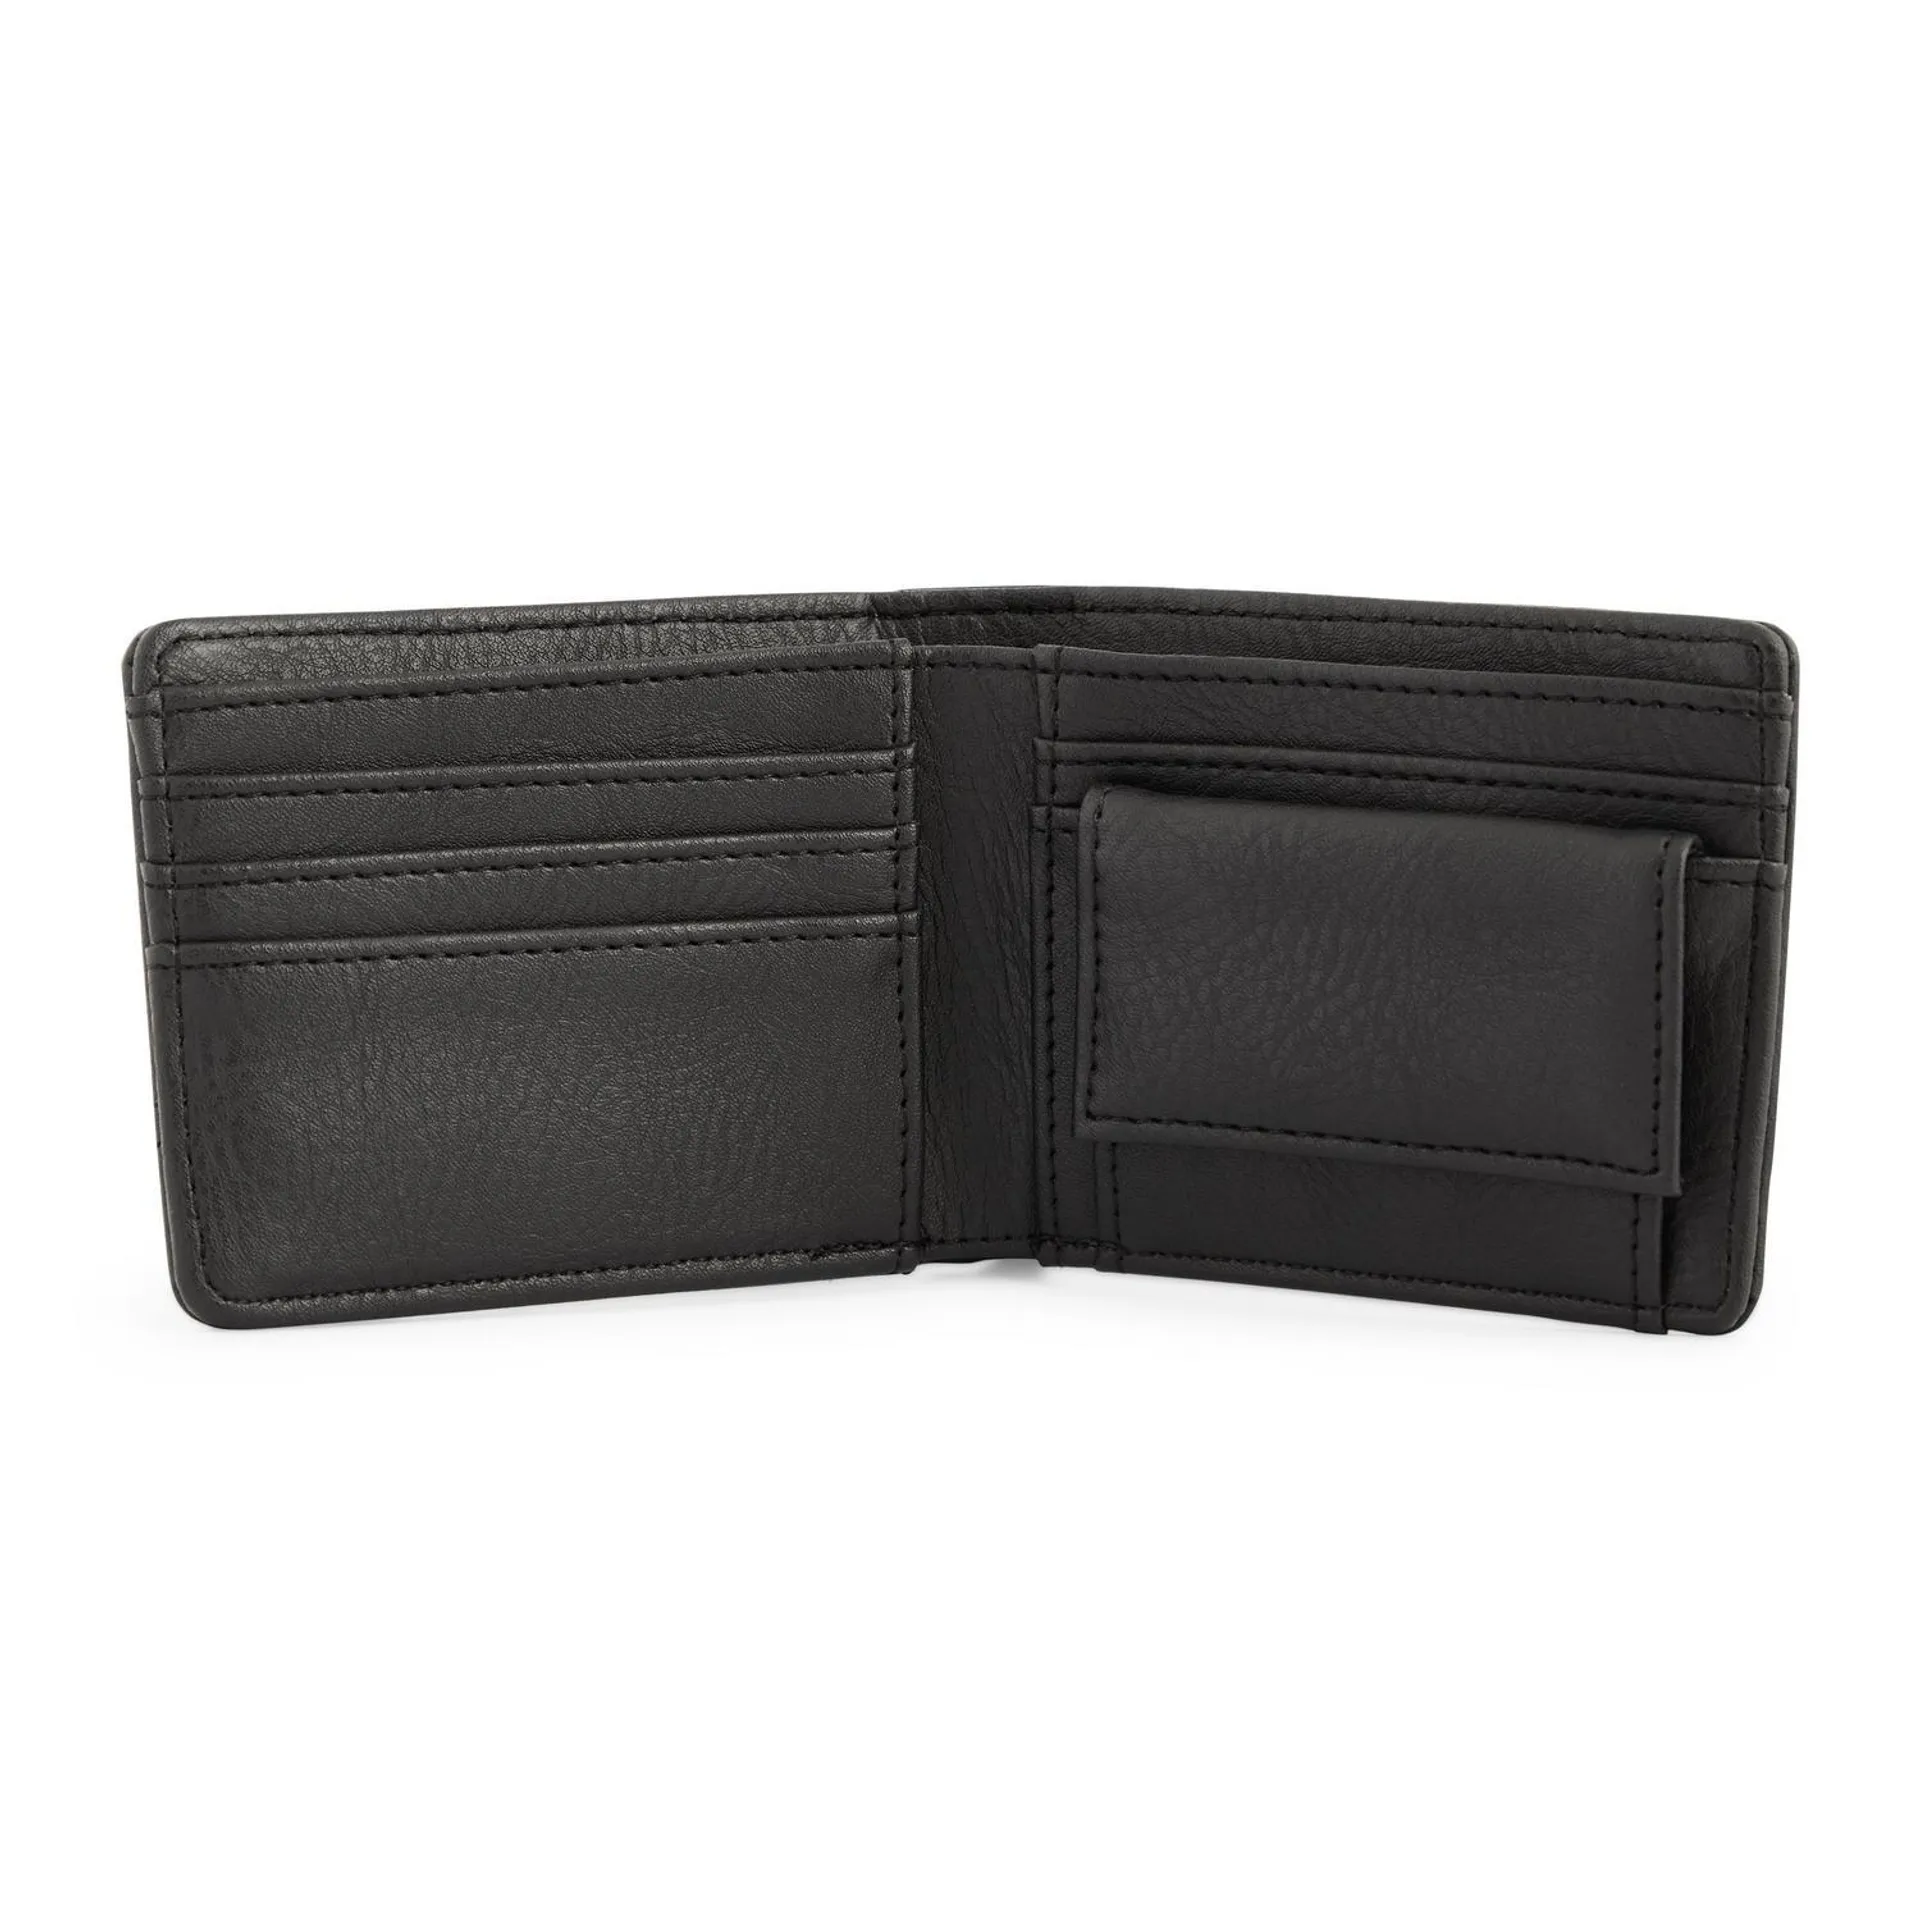 Black Removable Card Holder Wallet